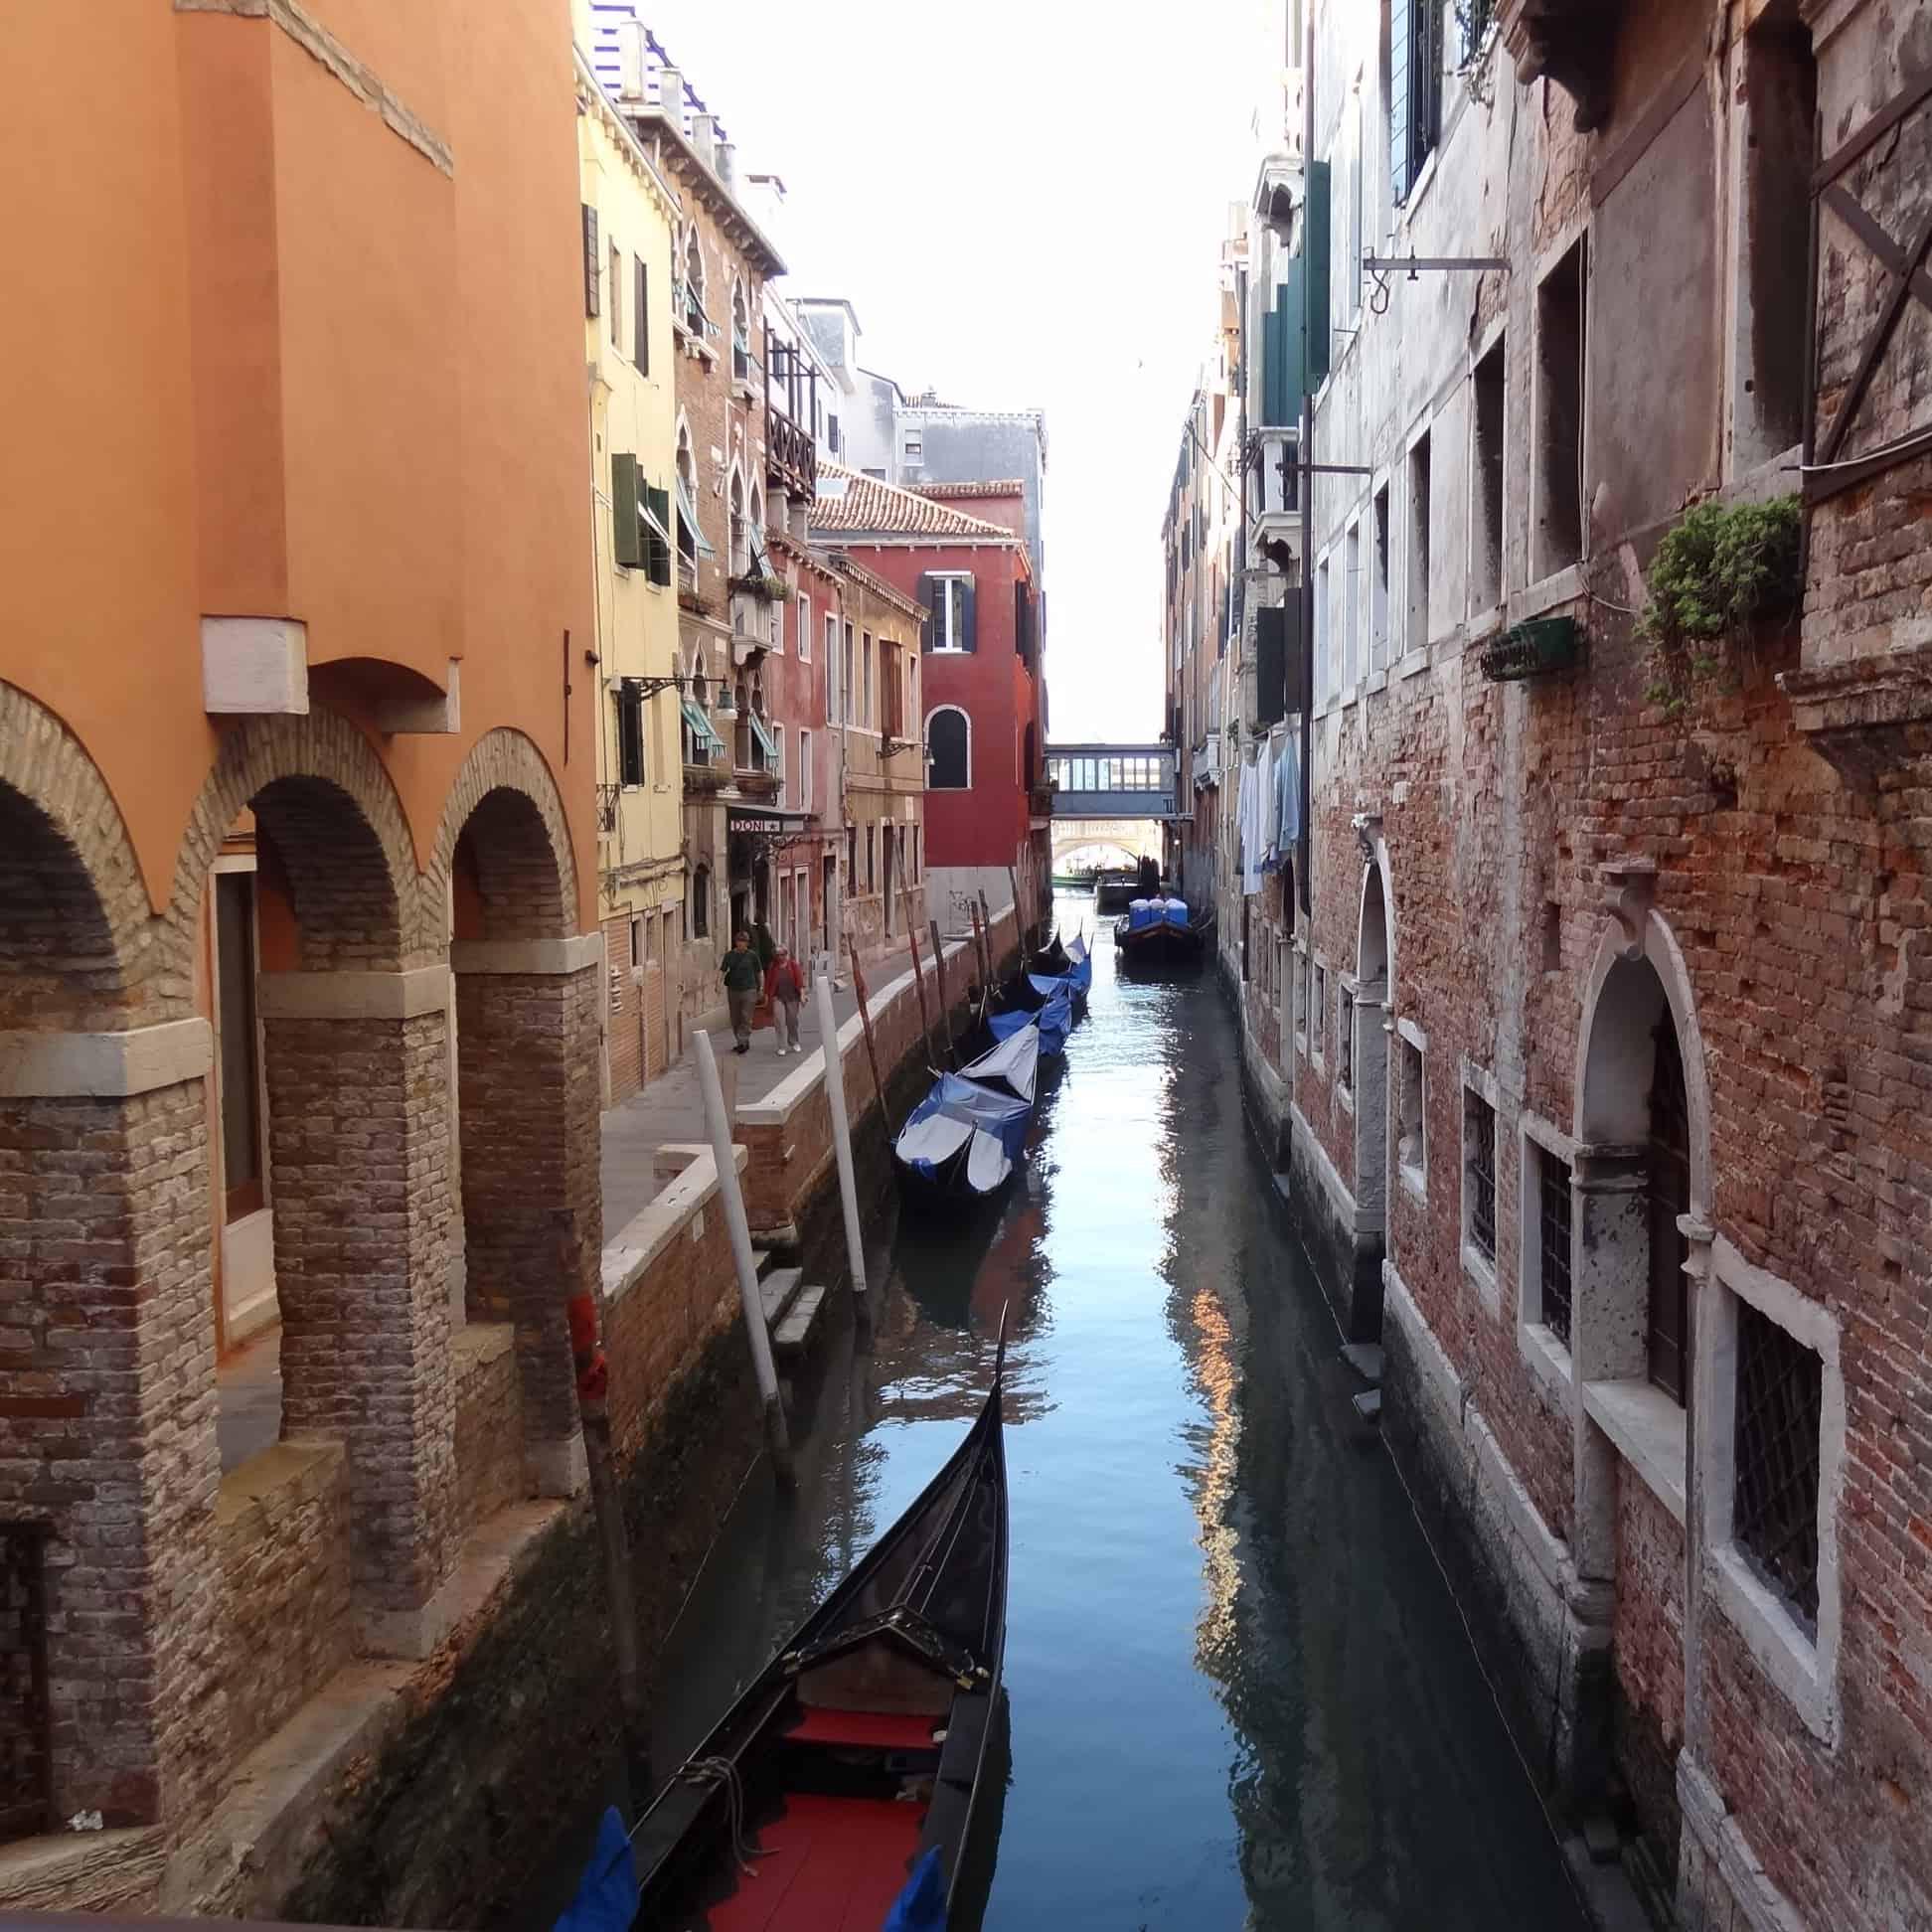 Ik ben vaak in Venetie. Een Venetie Kaart heb je echt nodig om je route te bepalen door de Straatjes van Venetie. Overzicht nodig? Ik help je met een kaart